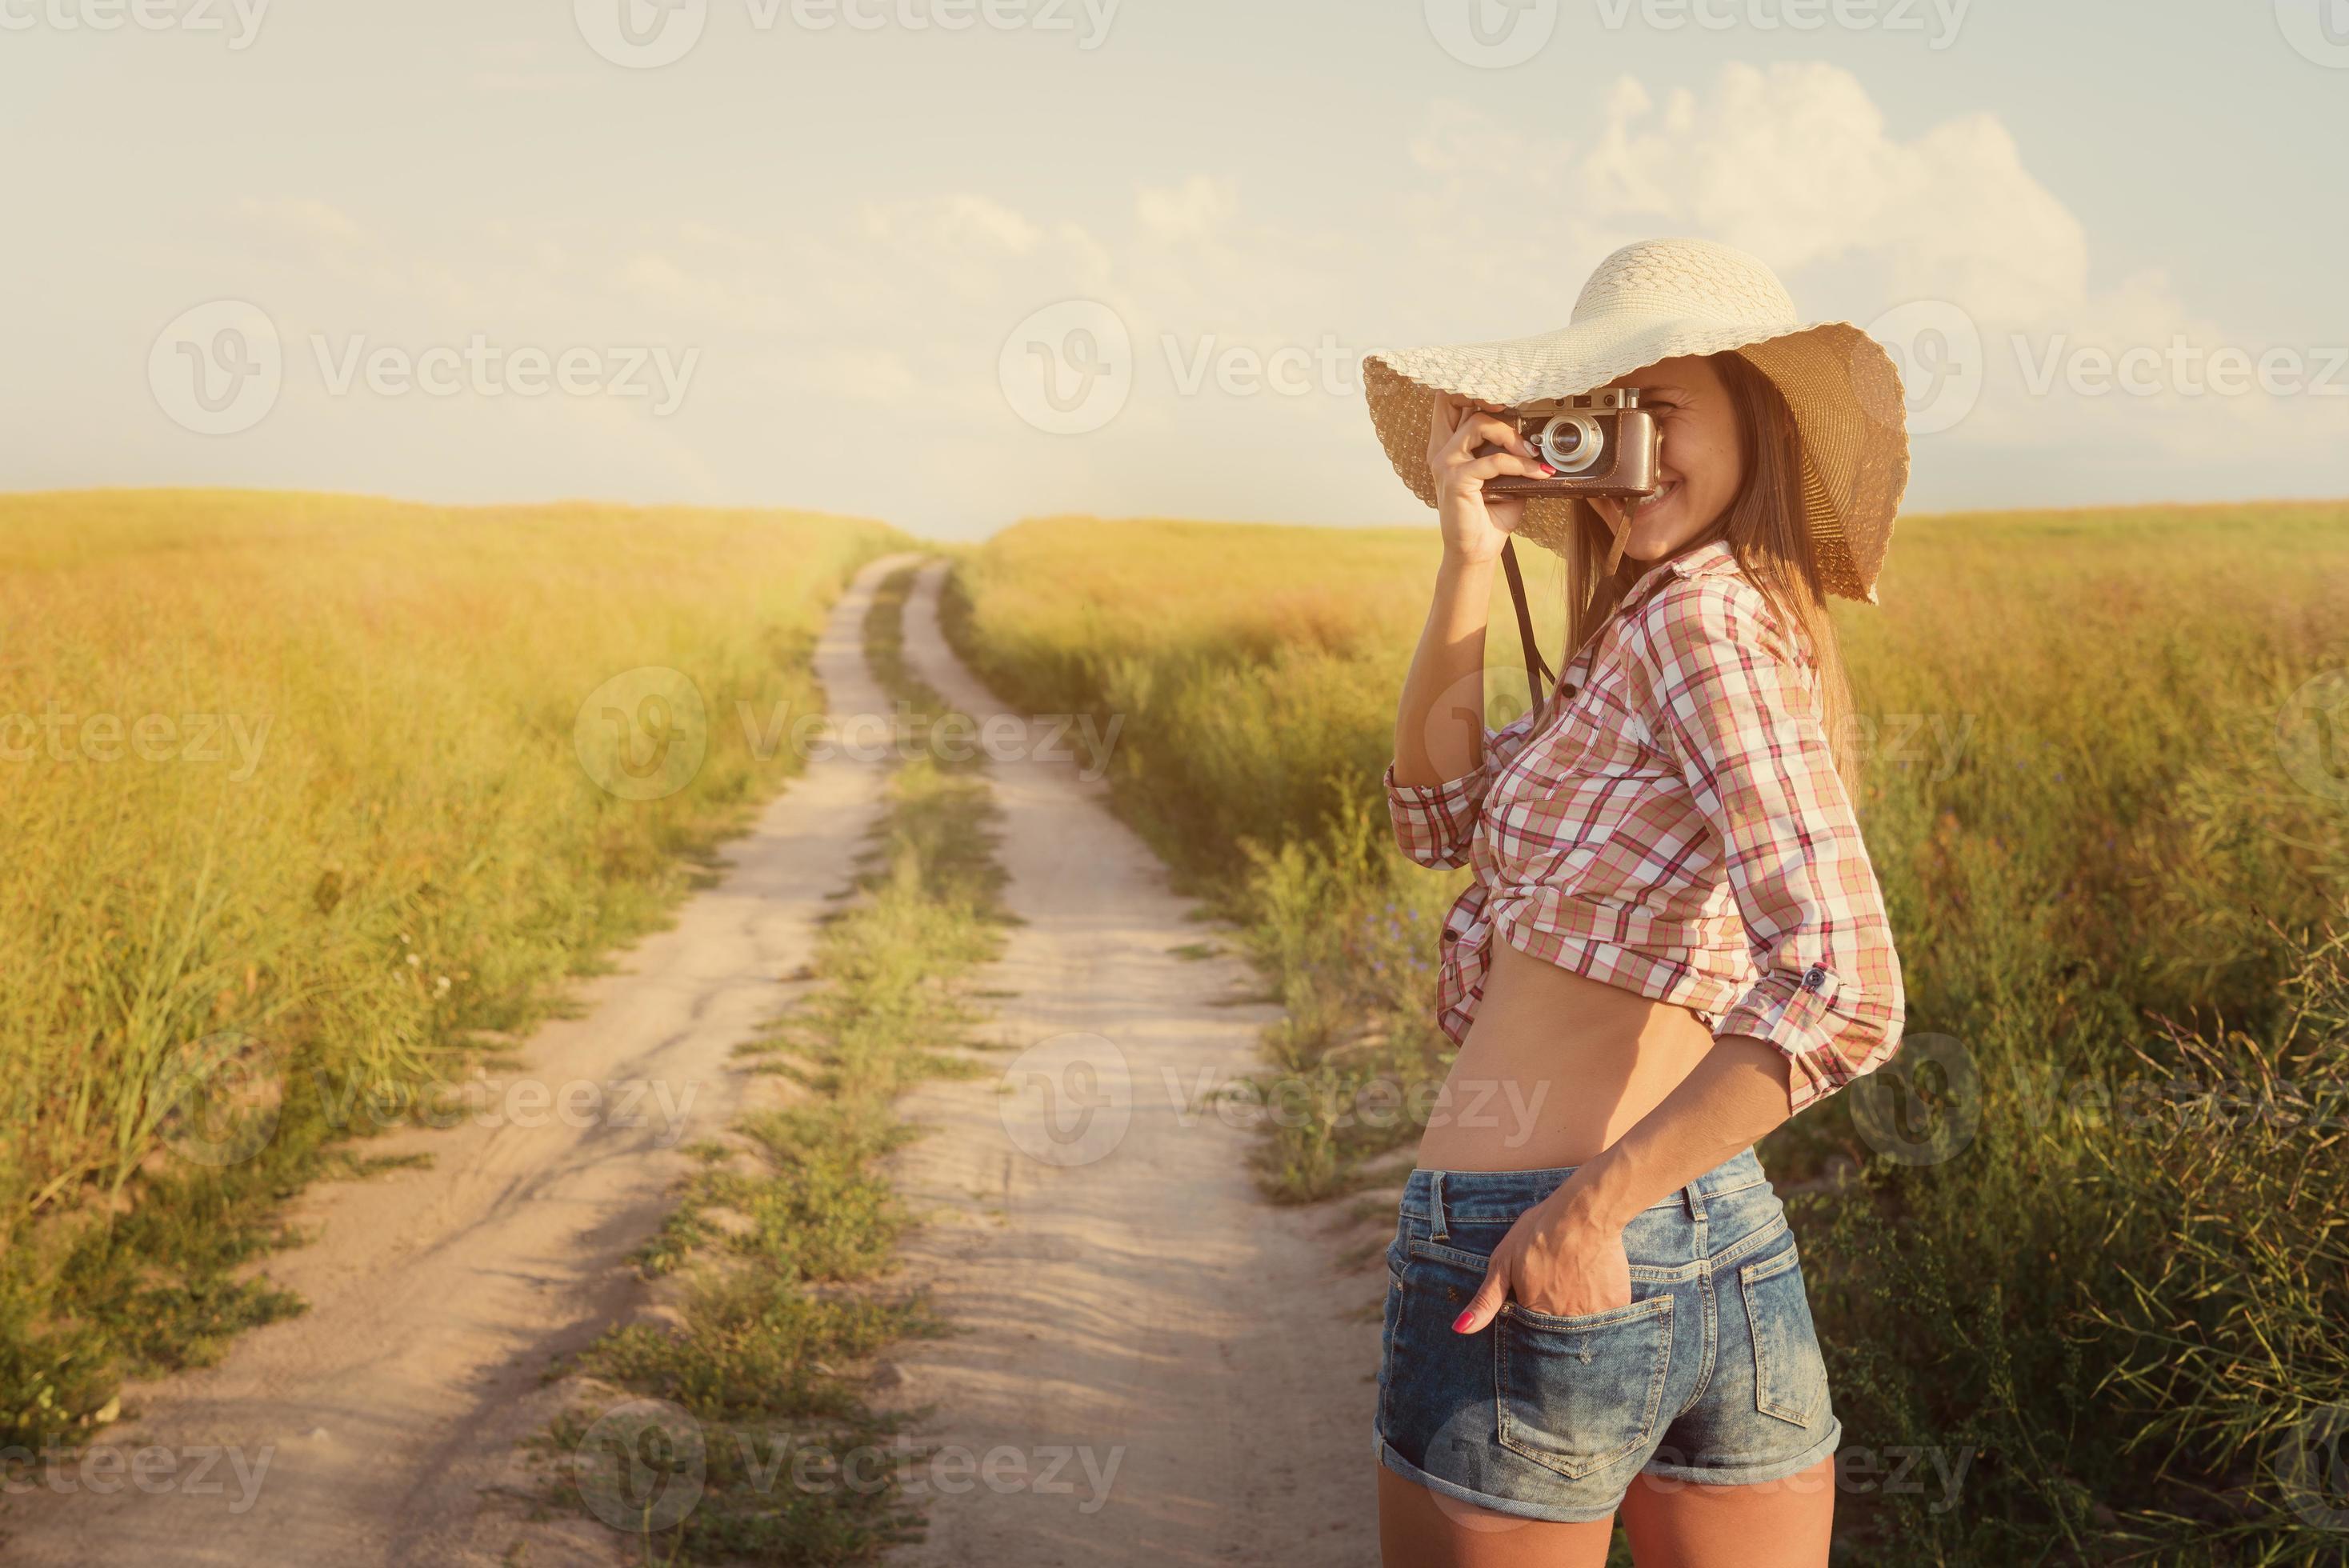 belle fille avec appareil photo rétro sur route de campagne, instagra